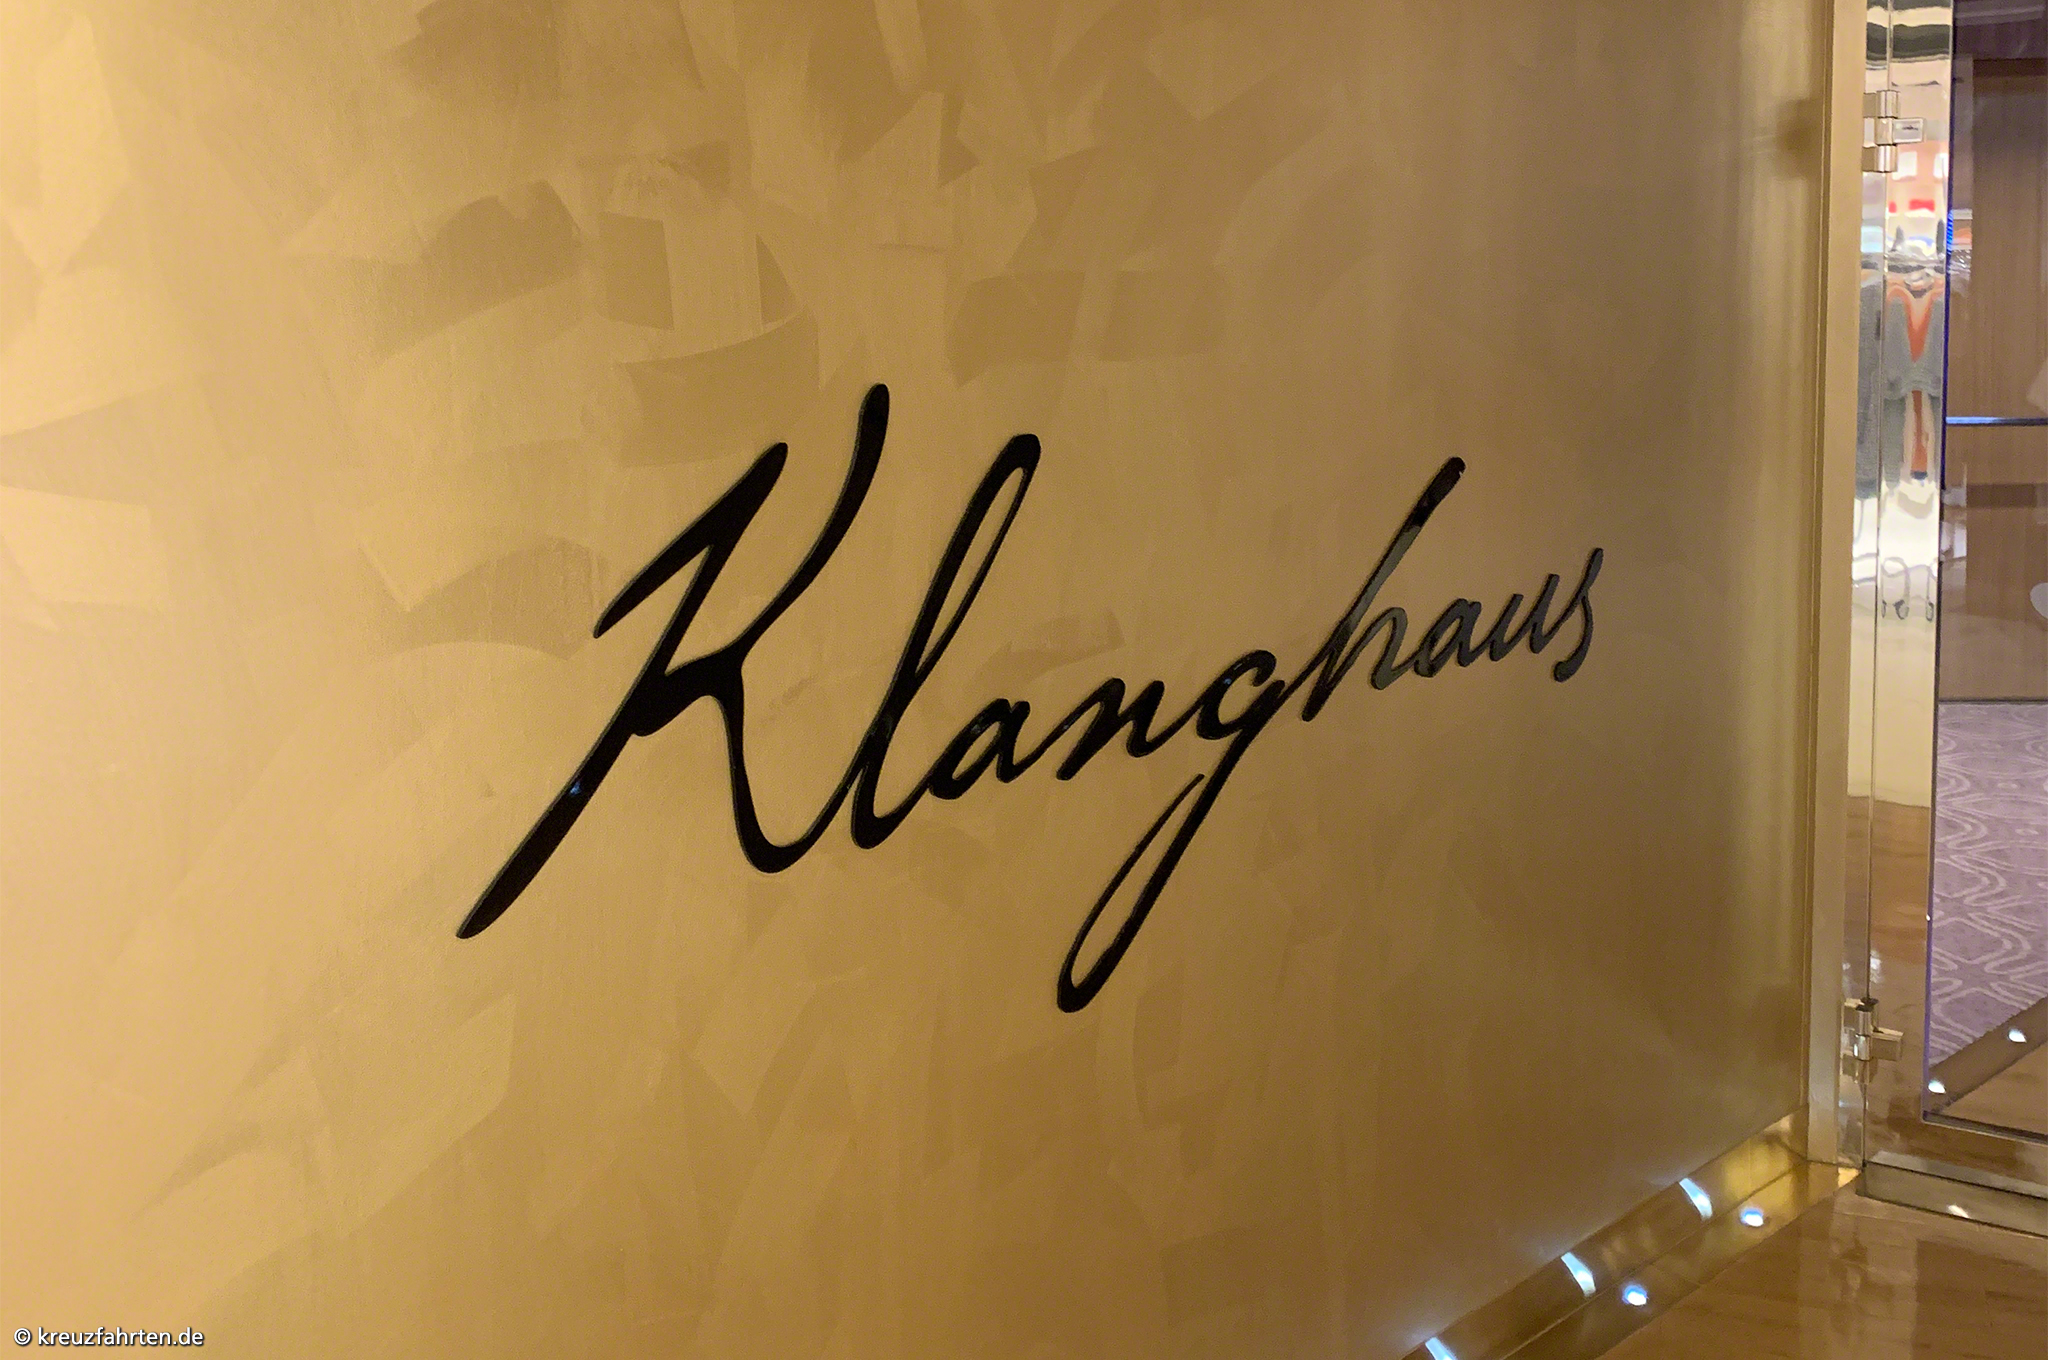 Klanghaus